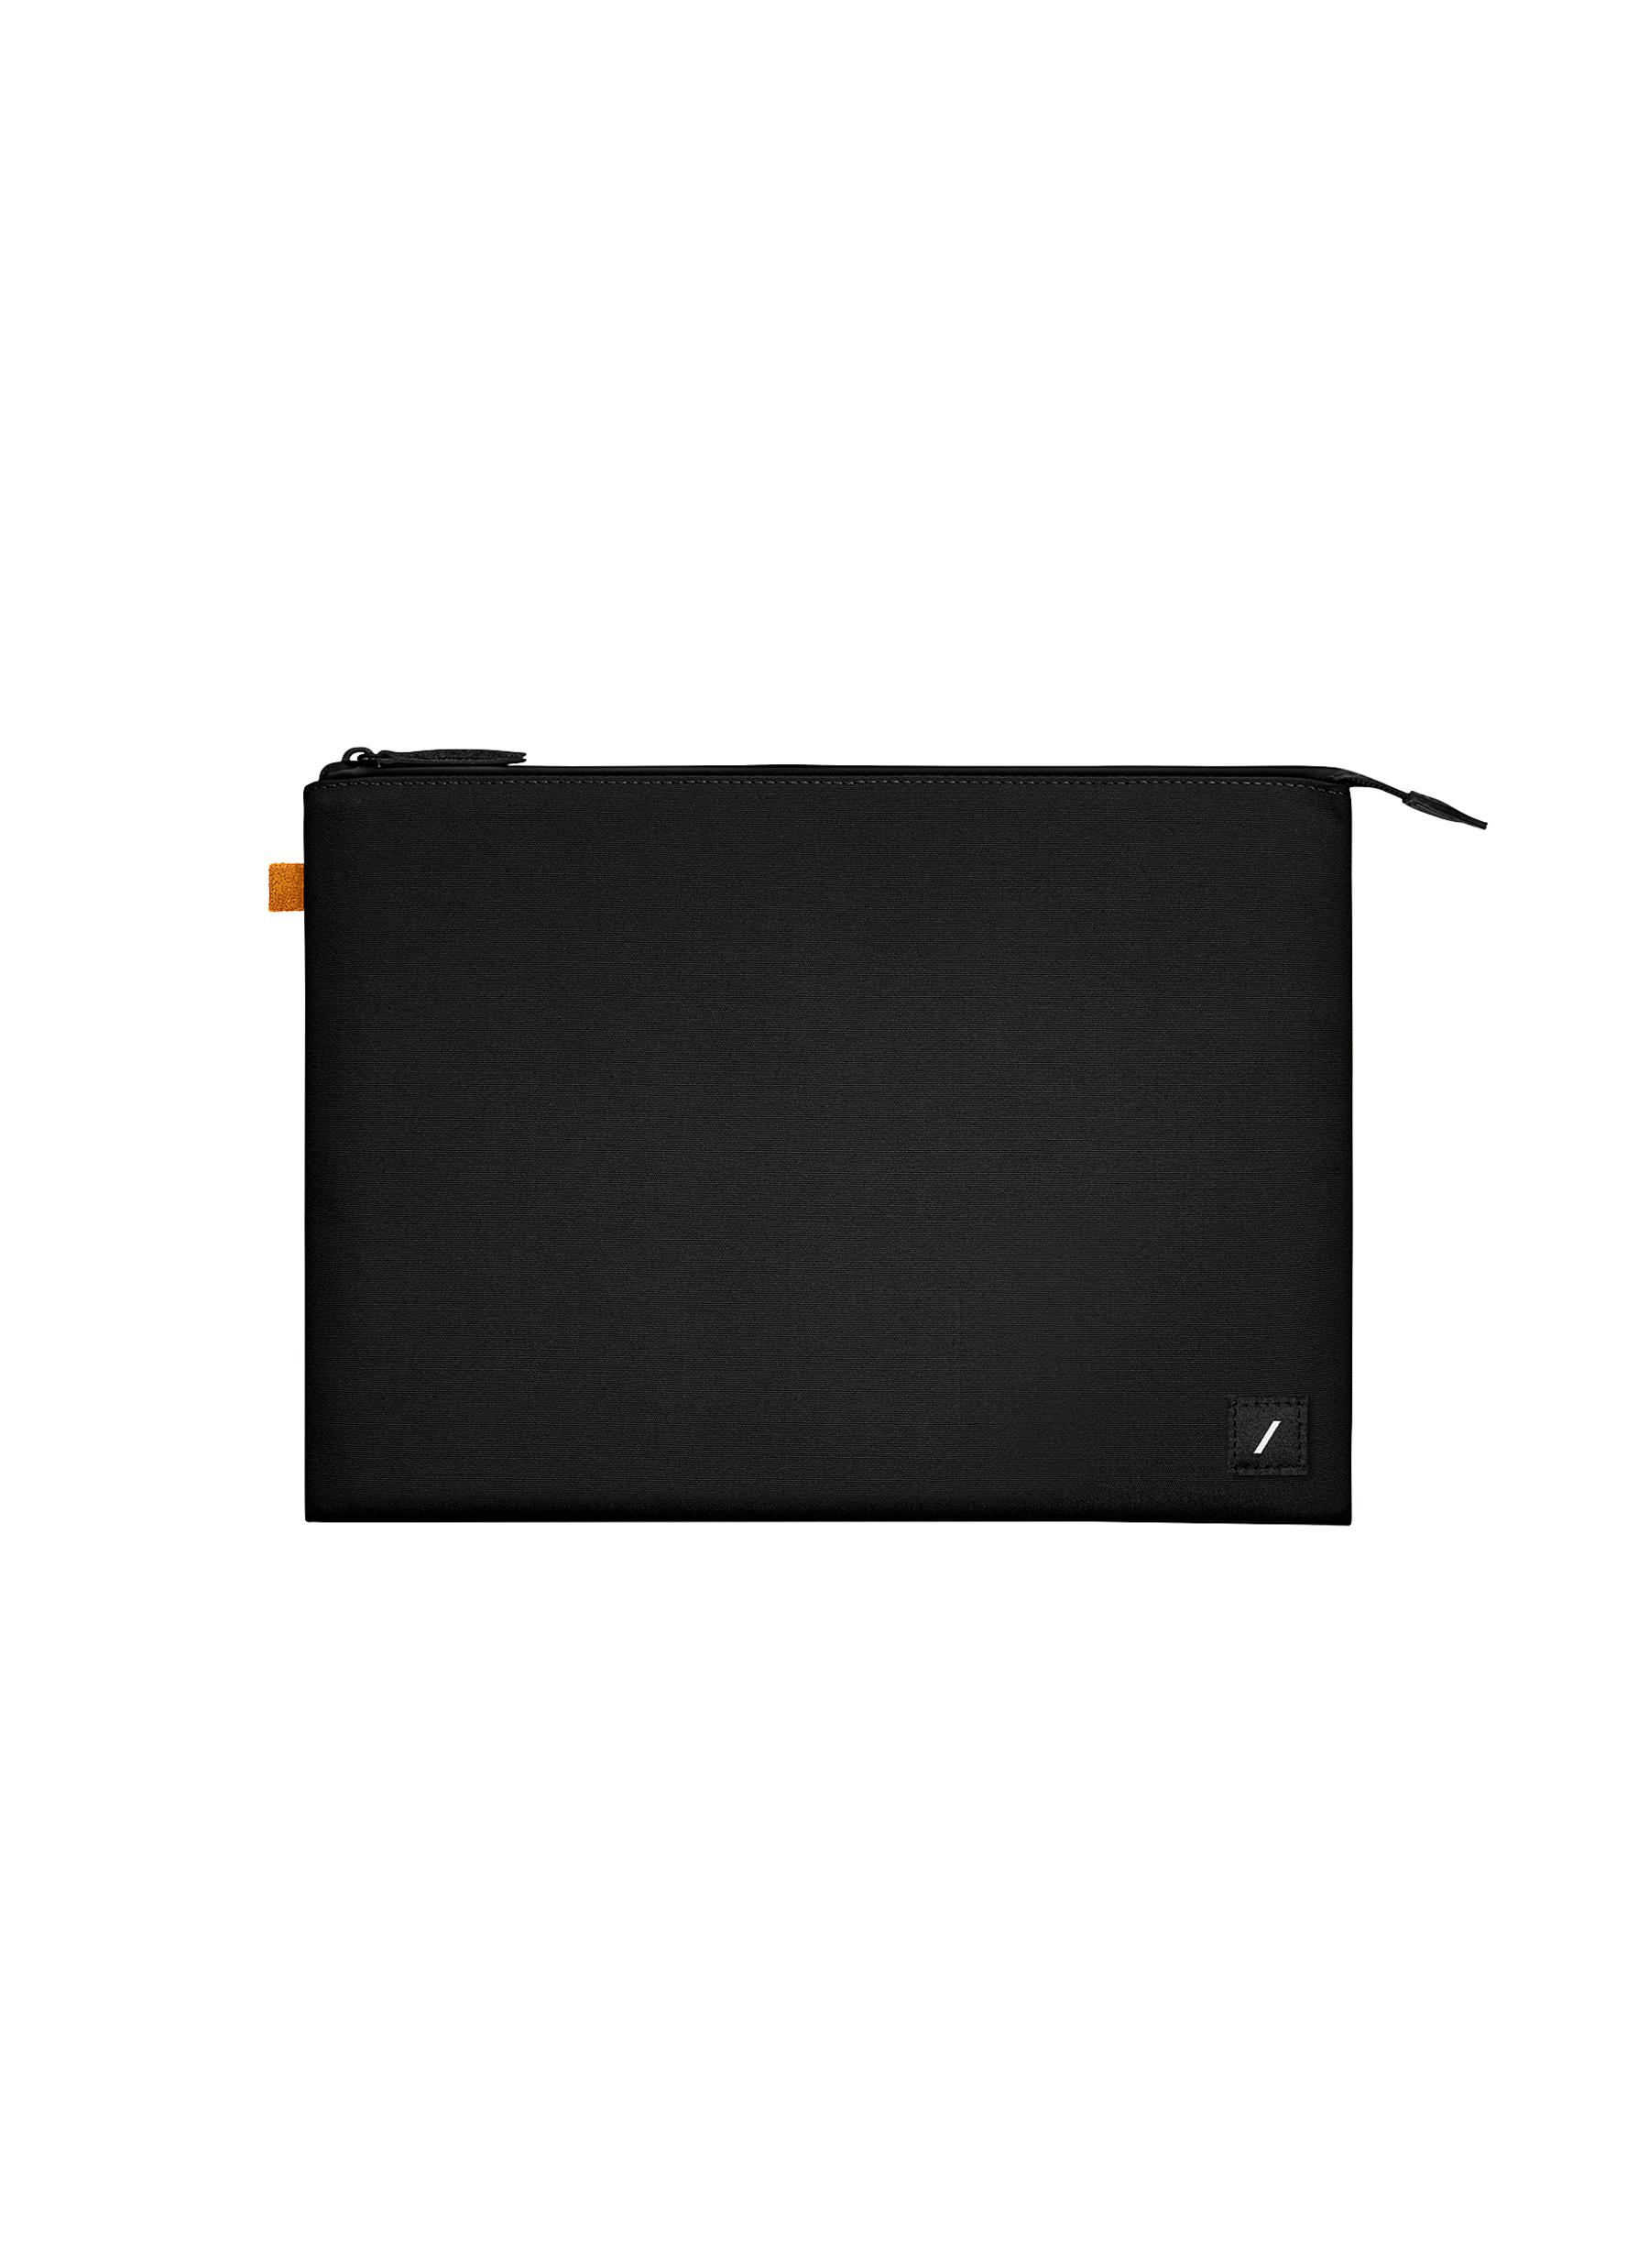 Stow Lite 14" Macbook Sleeve - Black